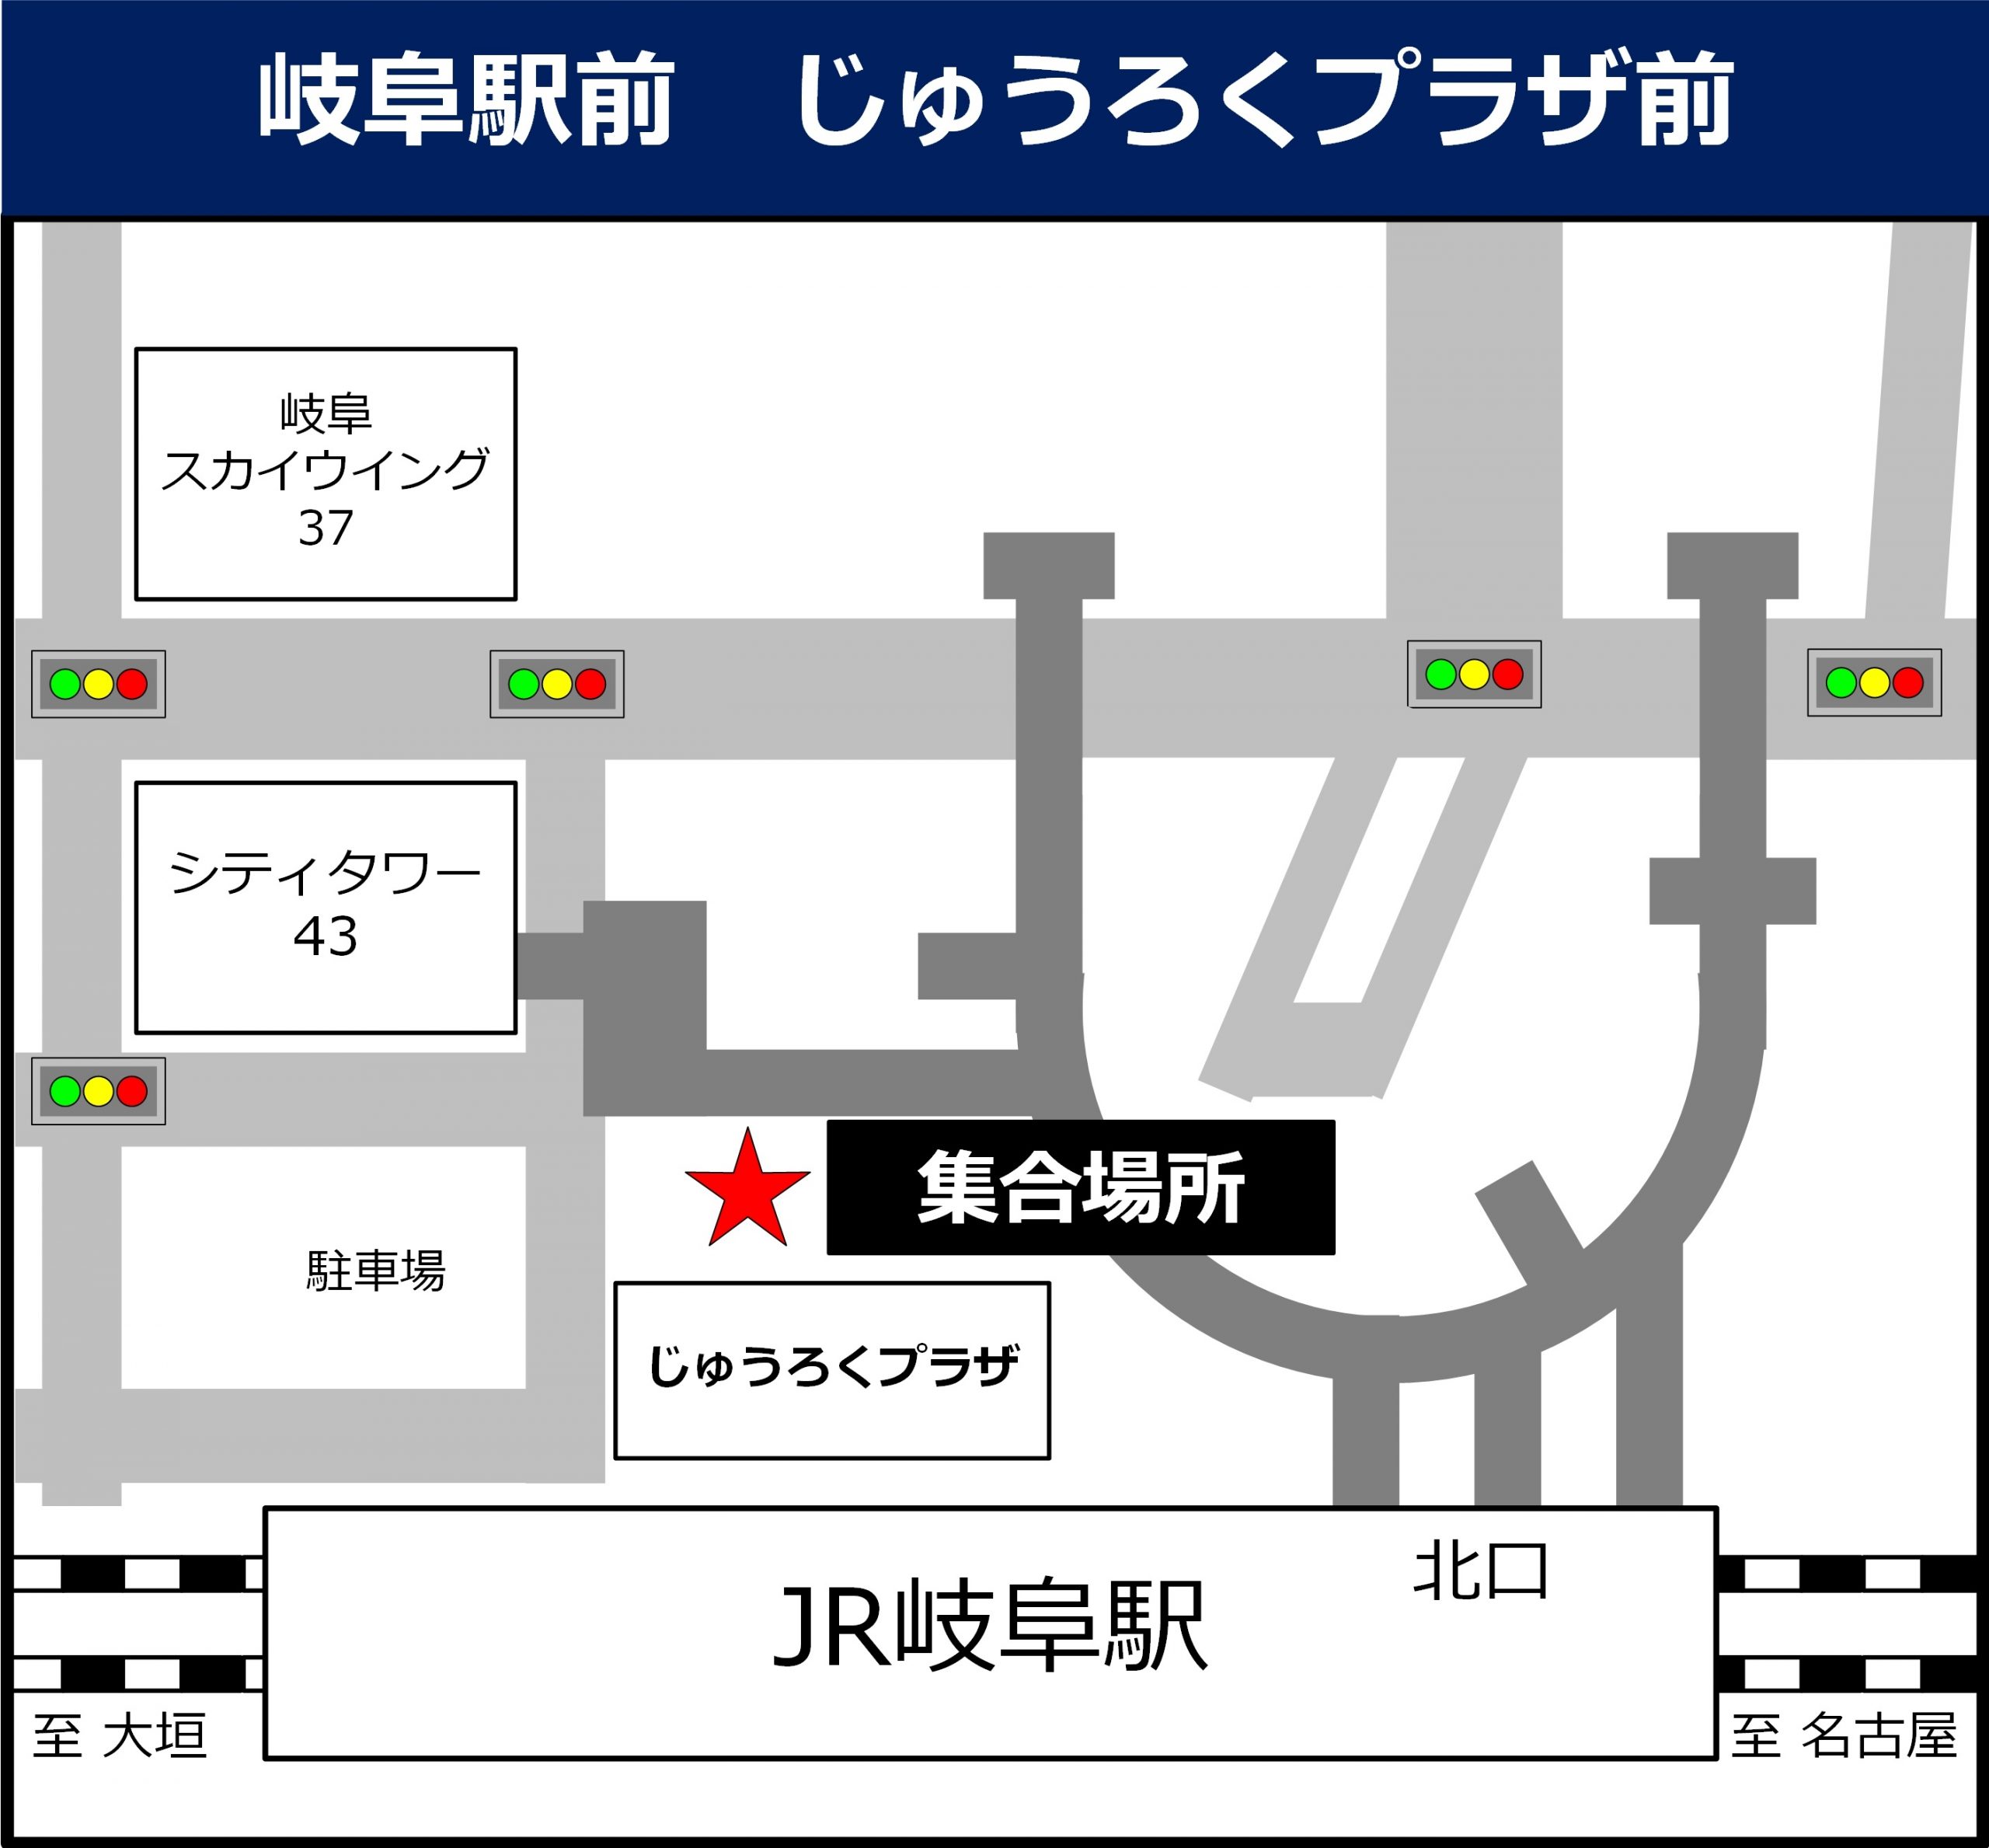 岐阜駅前 じゅうろくプラザ前の地図